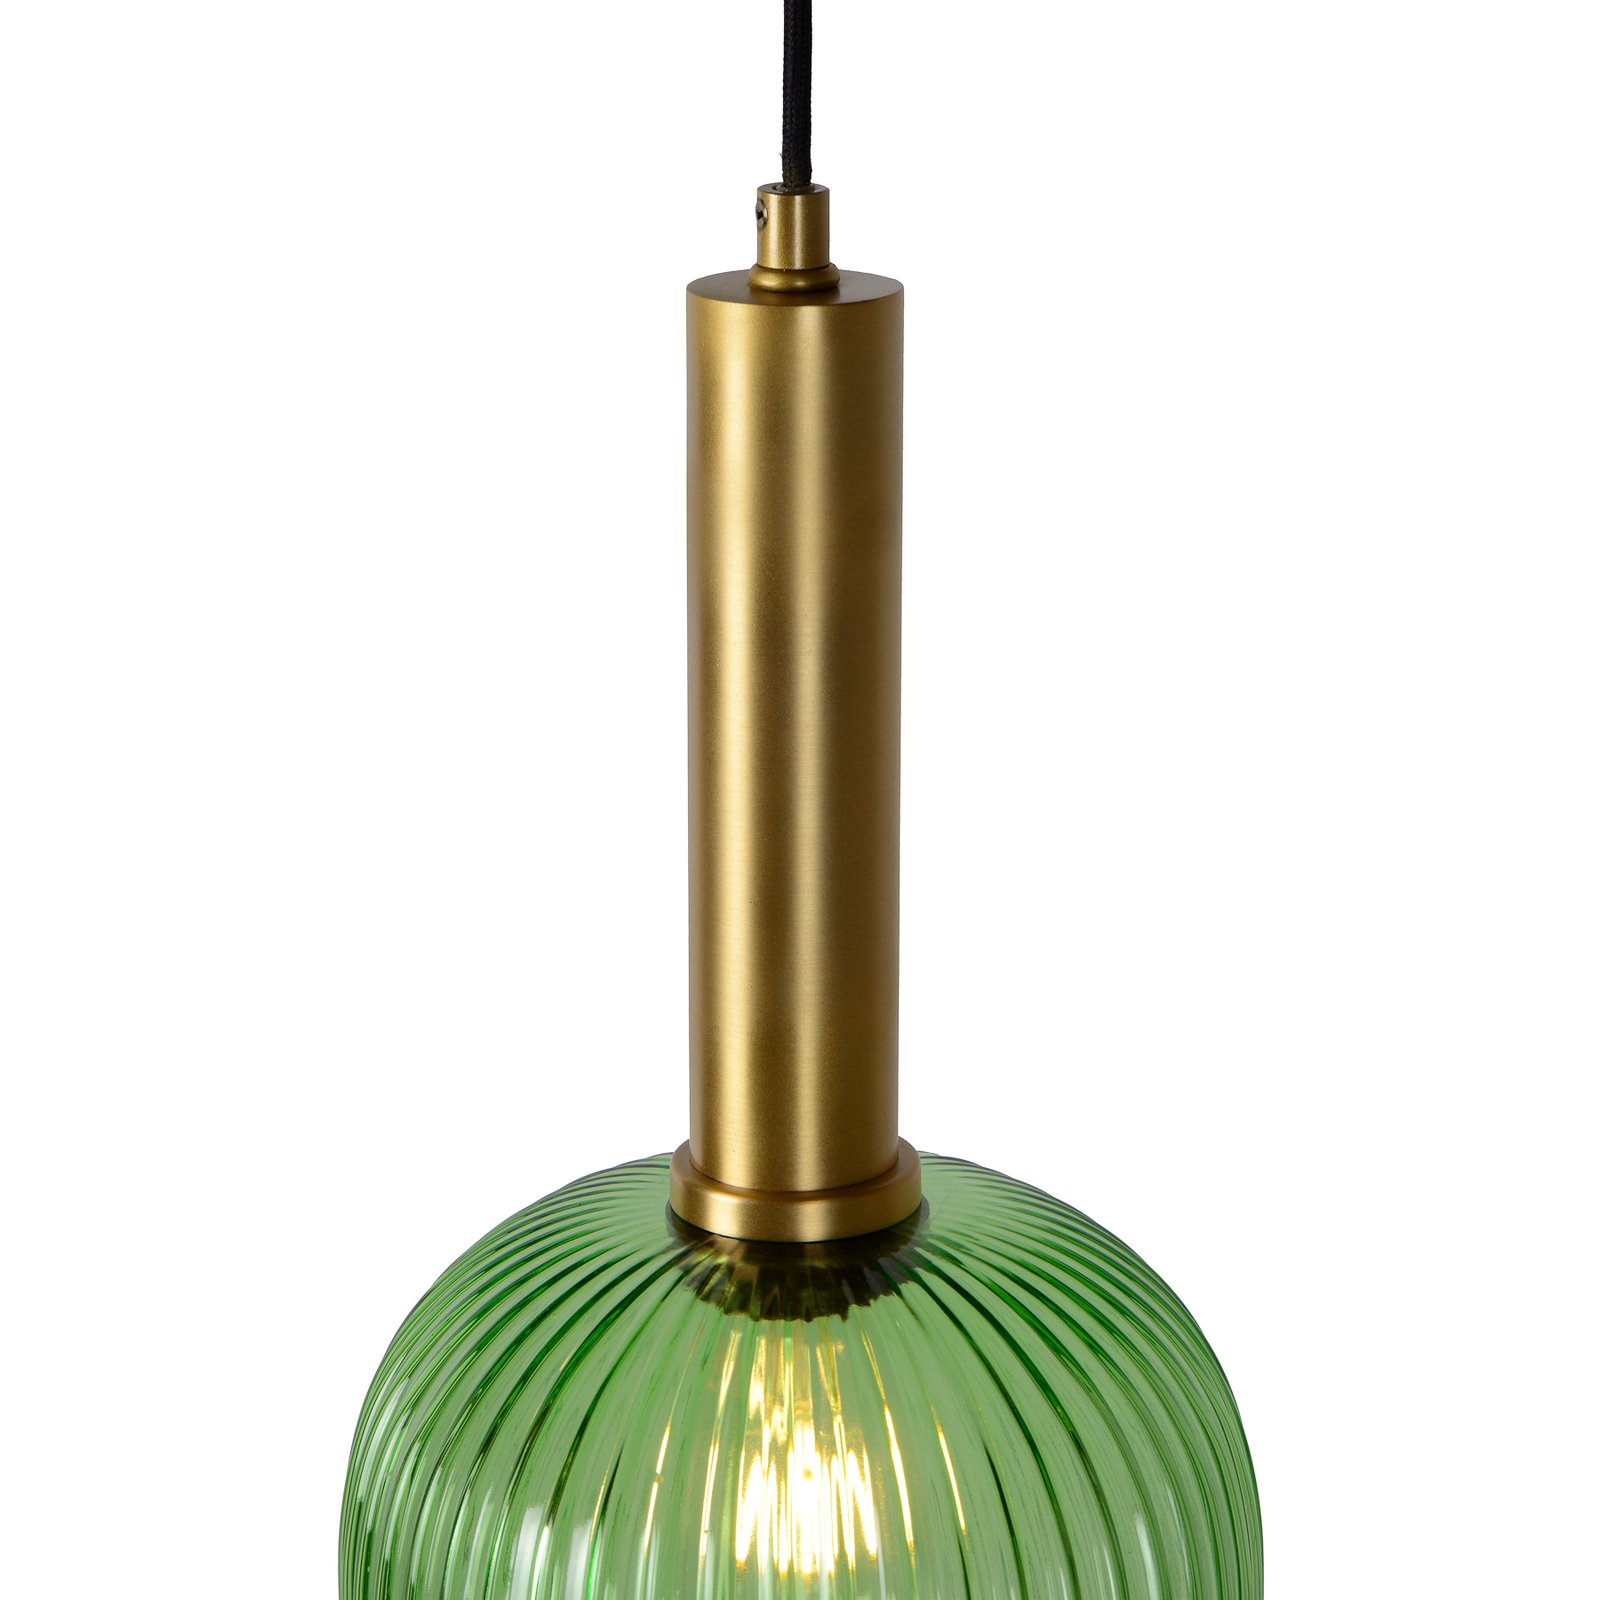 Maloto staklena viseća svjetiljka, Ø 20 cm, zelena